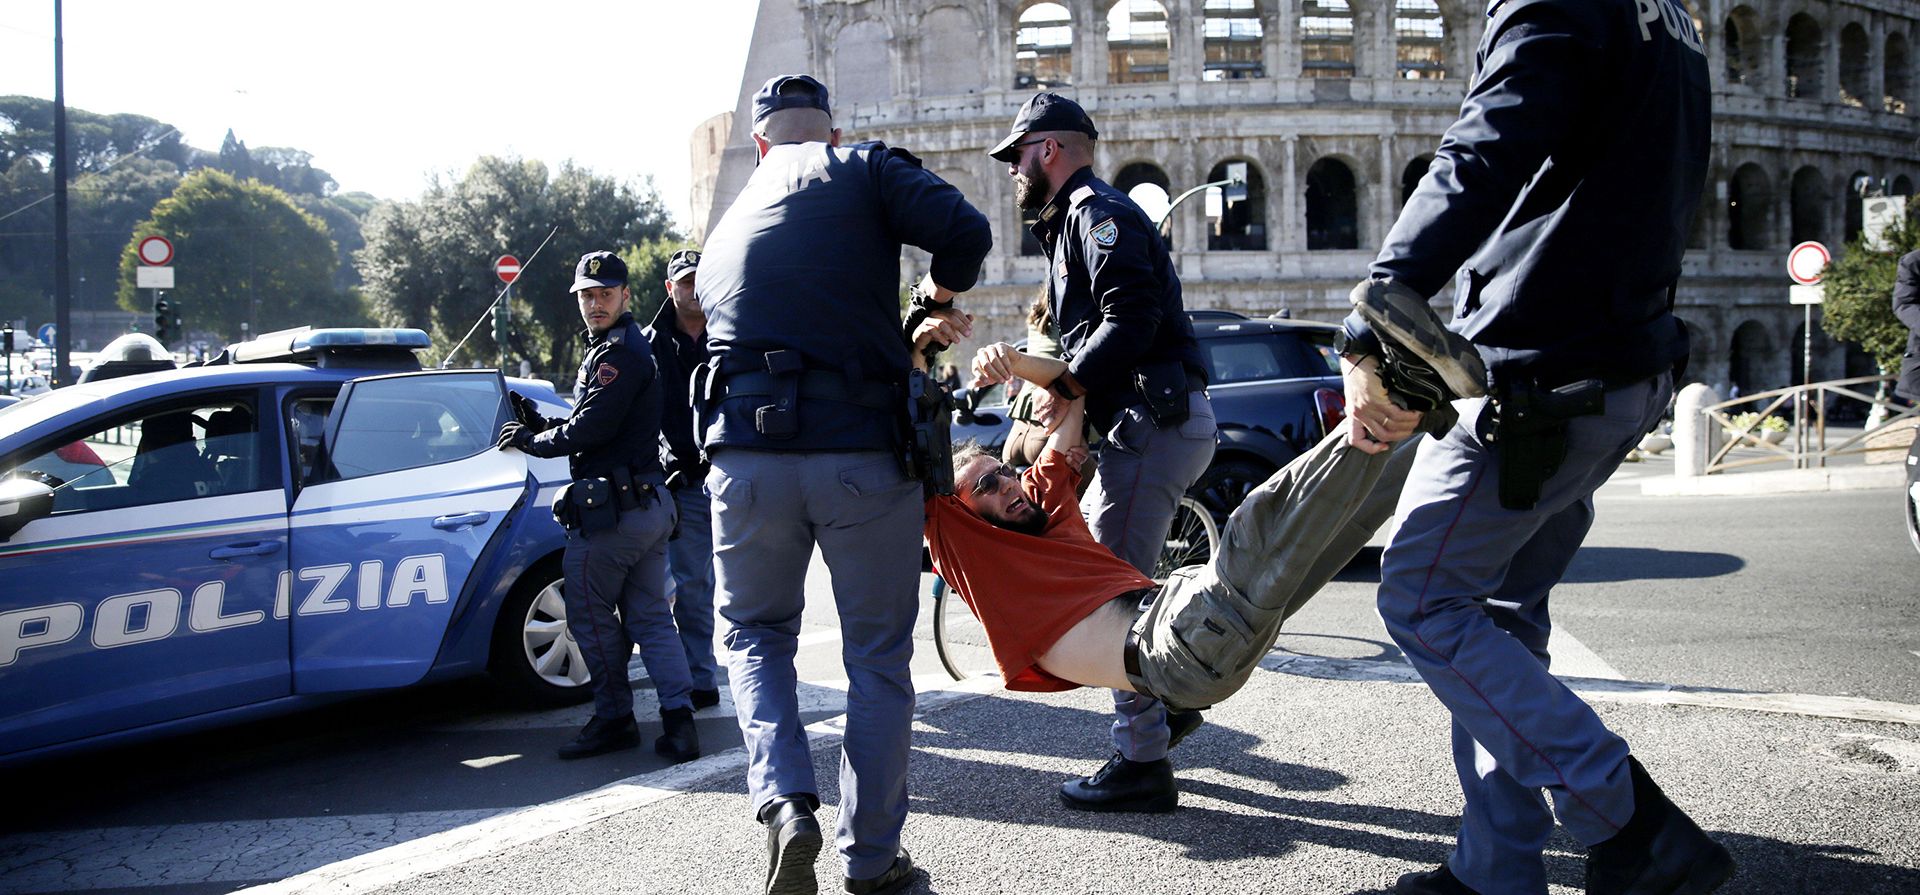 La policía retira a los manifestantes de Última Generación que bloqueaban el tráfico frente al Coliseo en el centro de Roma, para protestar contra la crisis ambiental el viernes 11 de noviembre de 2022.